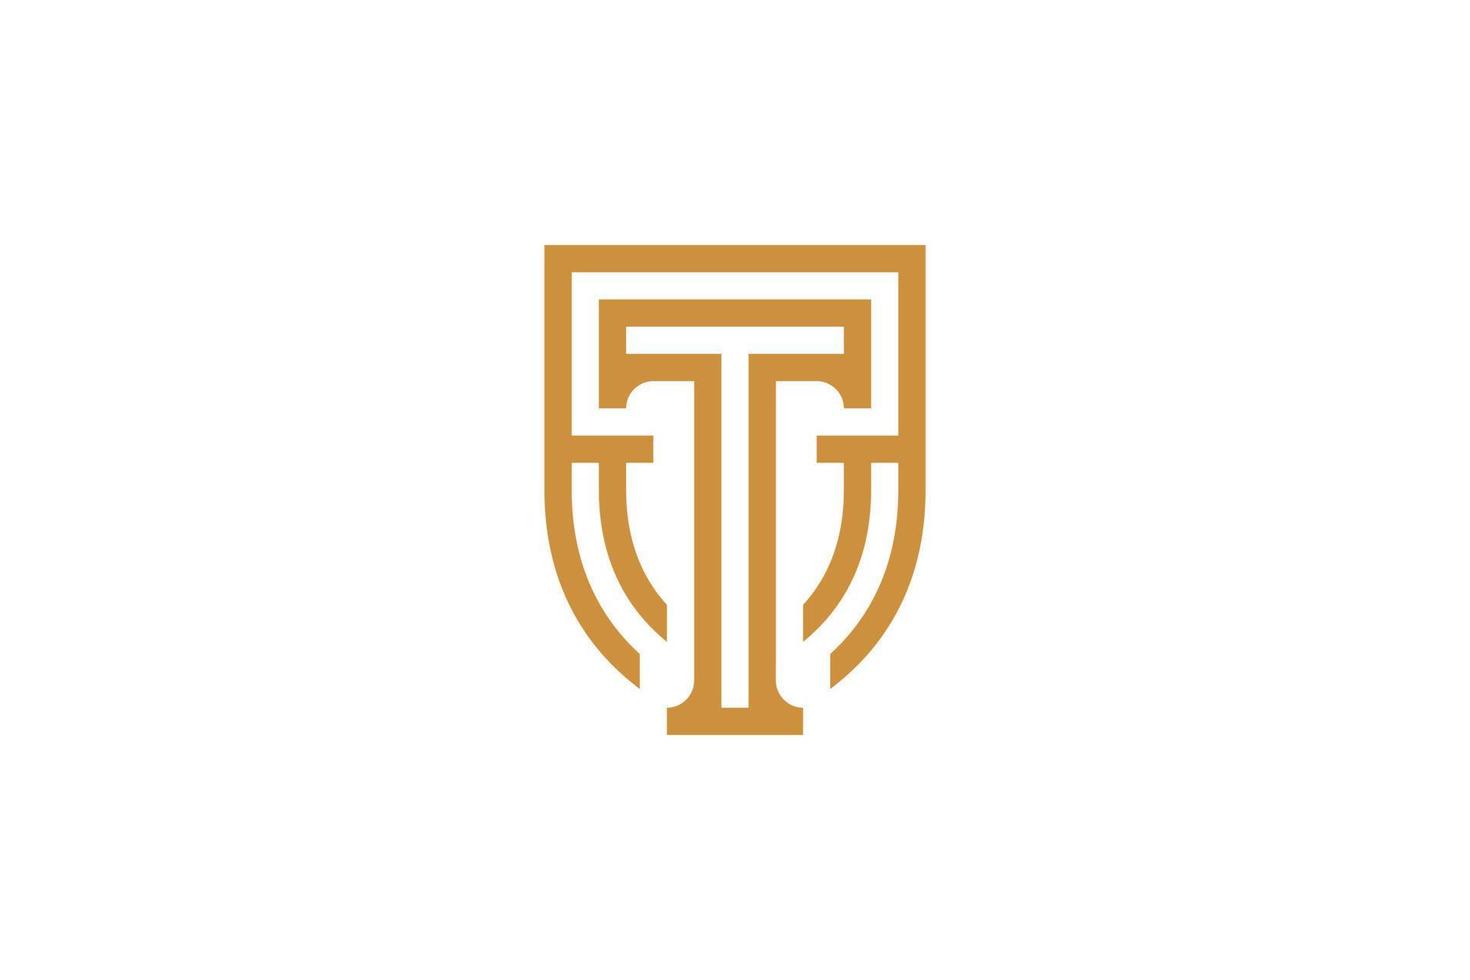 diseño de logotipo de letra t monoline vector